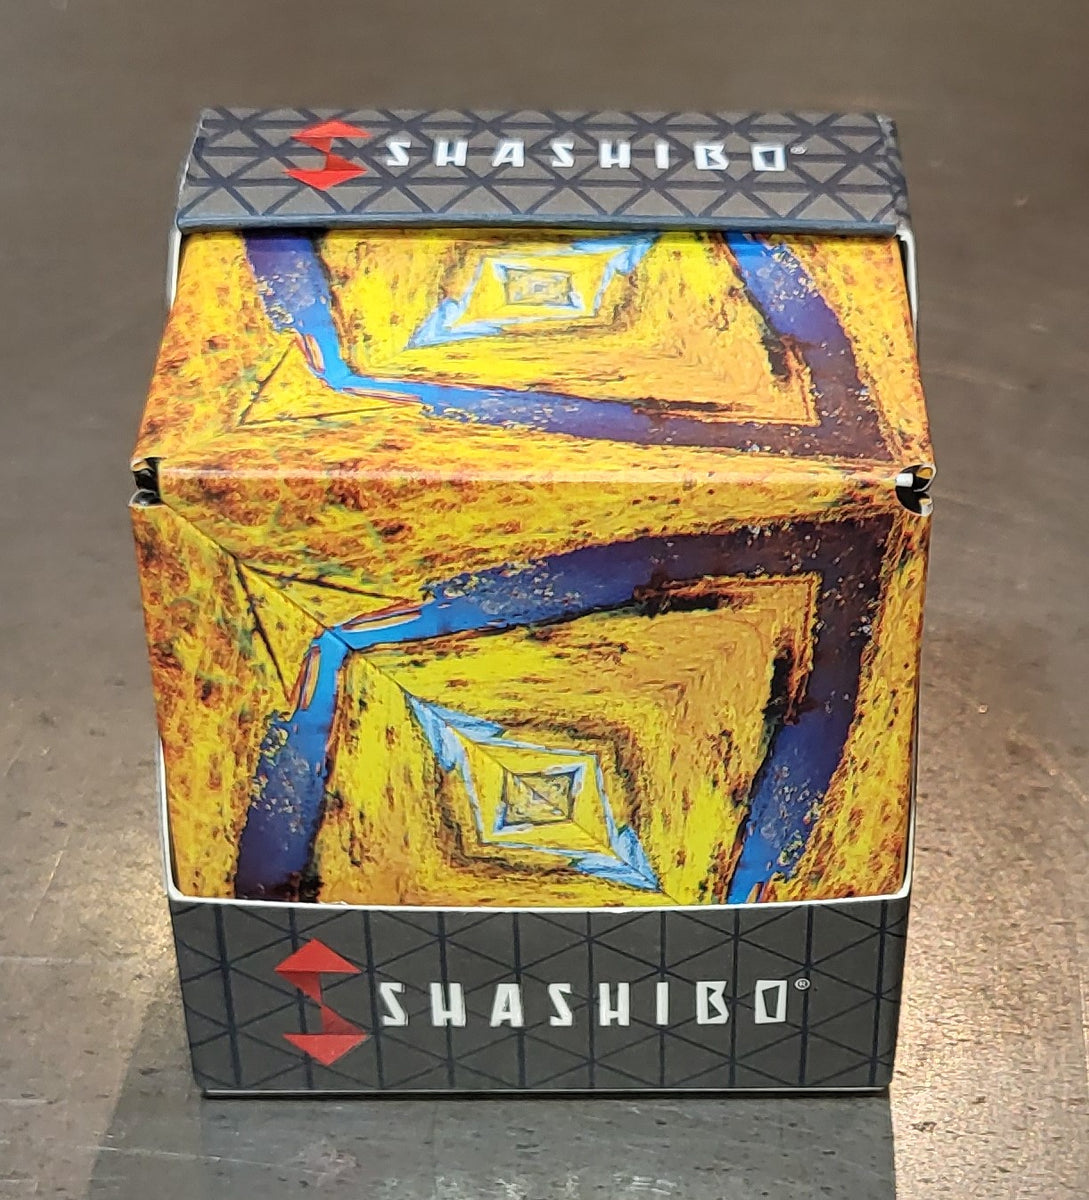 Shape-Shifting Shashibo Puzzle